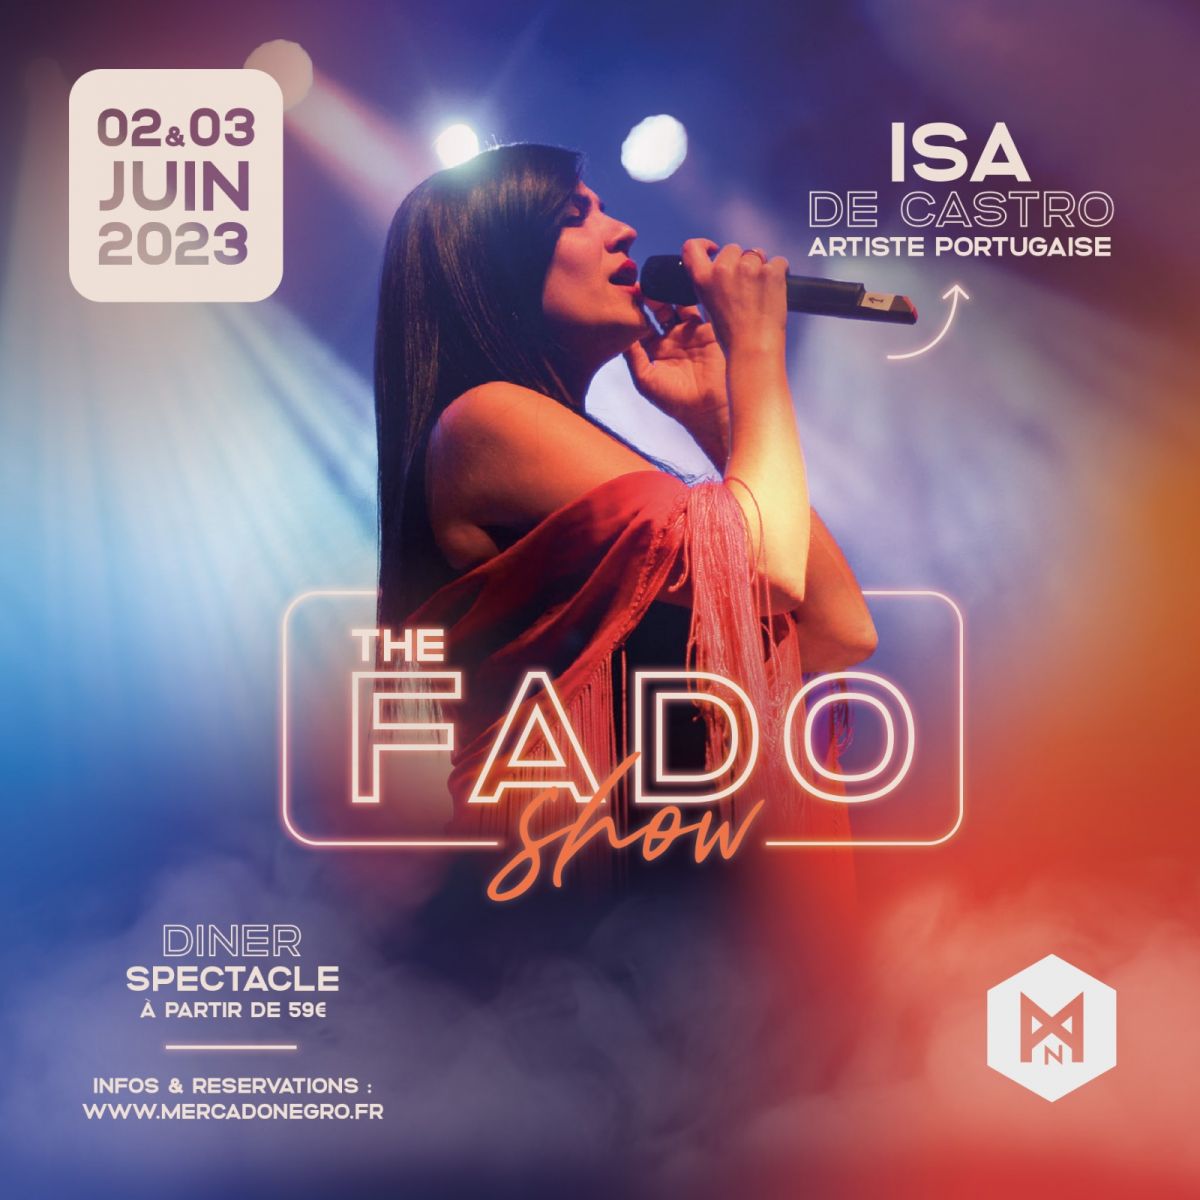 THE FADO SHOW - Isa De Castro